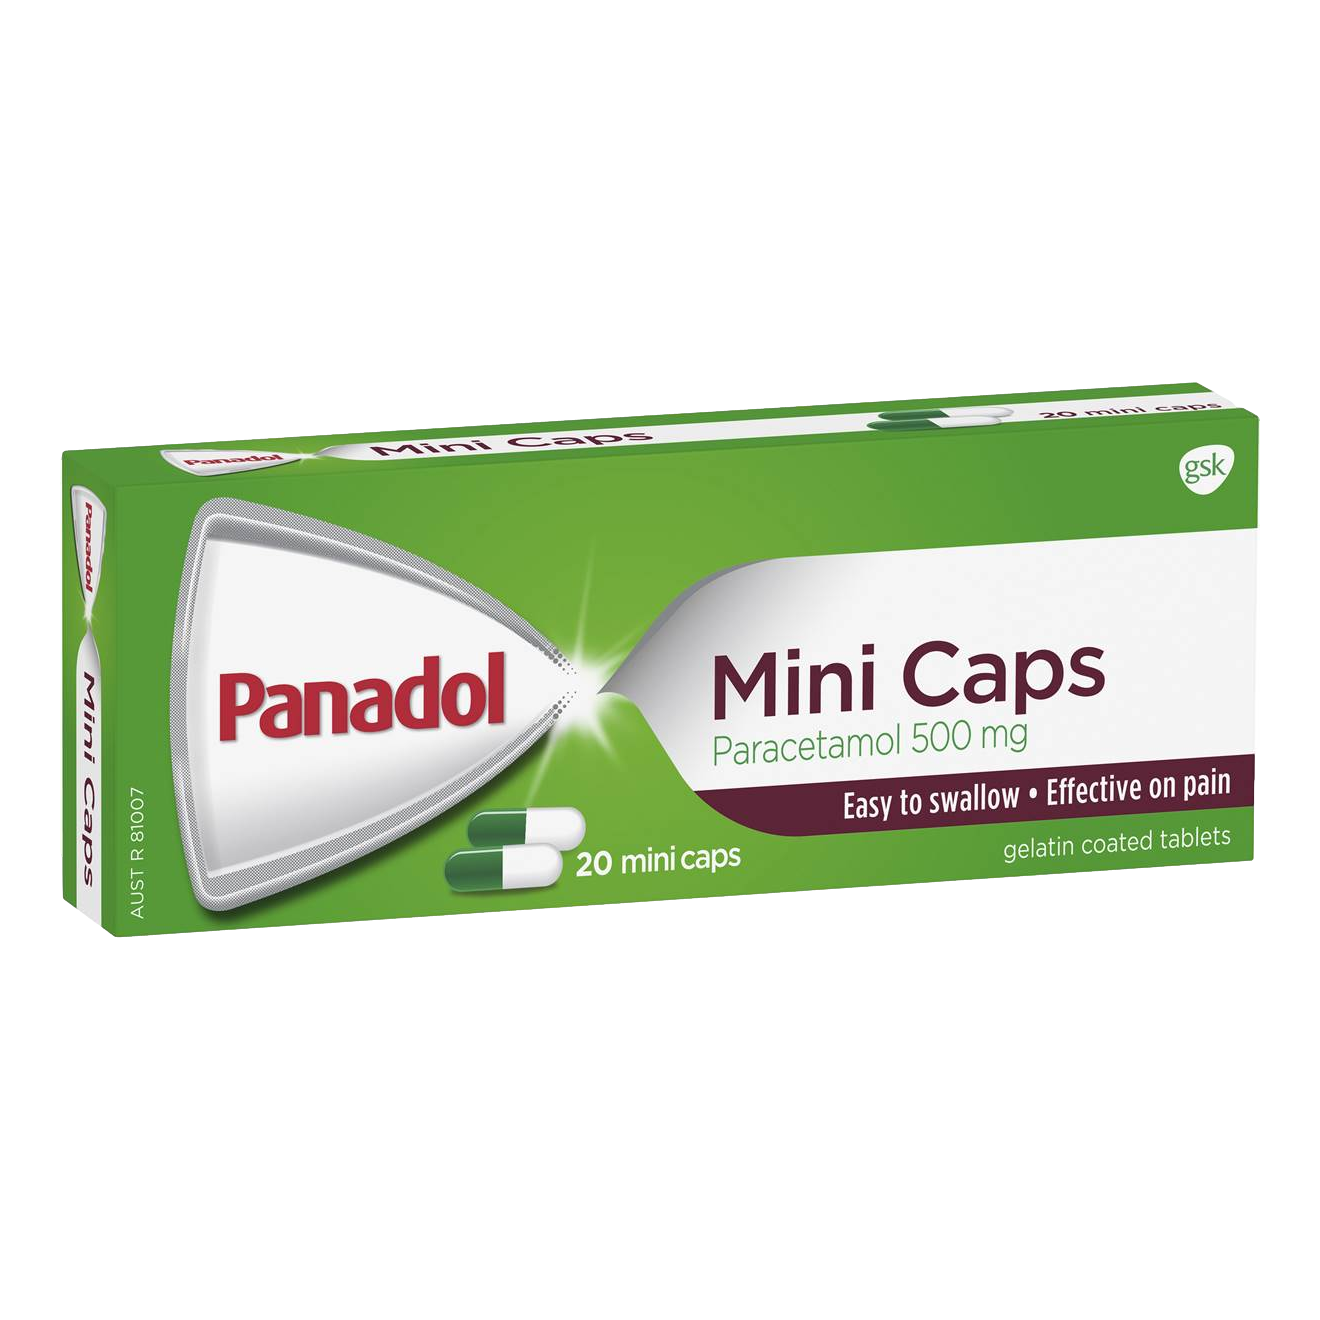 Panadol Mini Caps 20 Pack